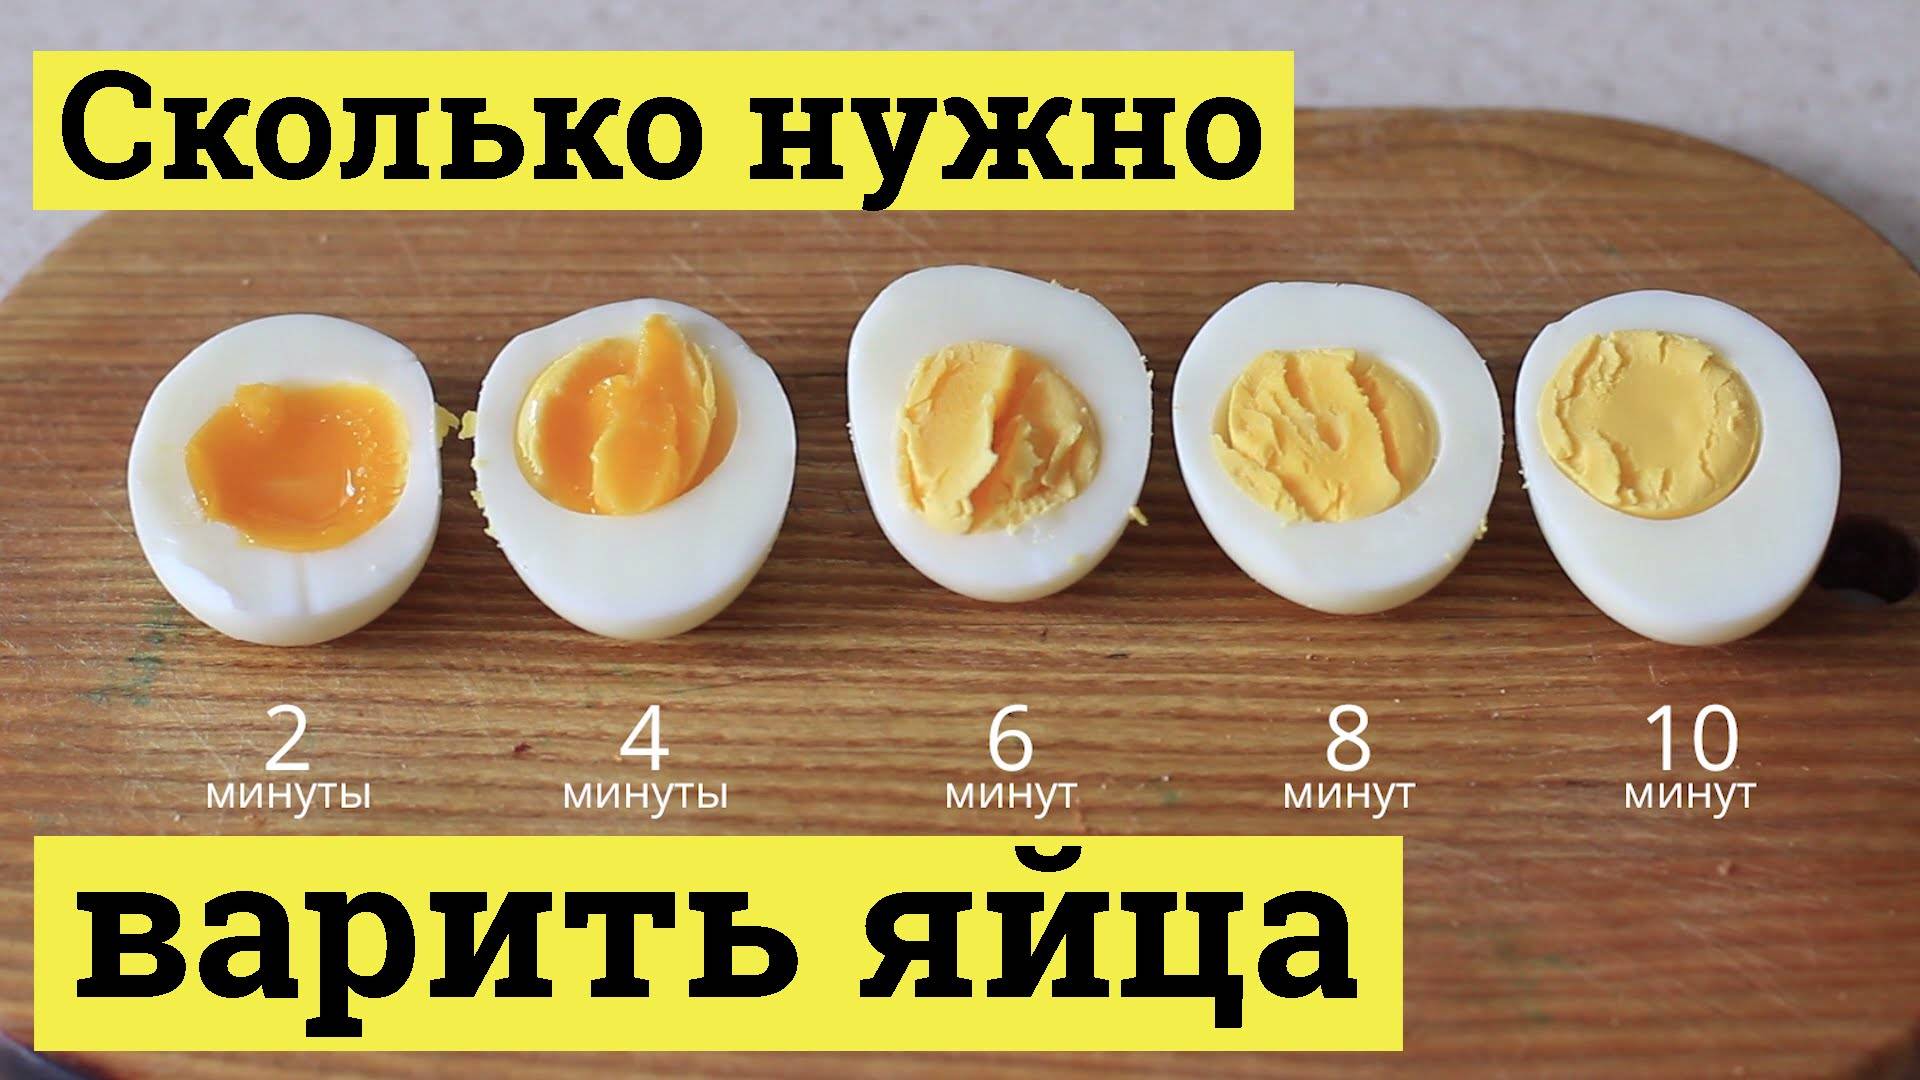 Как сварить яйца: 14 шагов (с иллюстрациями) - wikihow